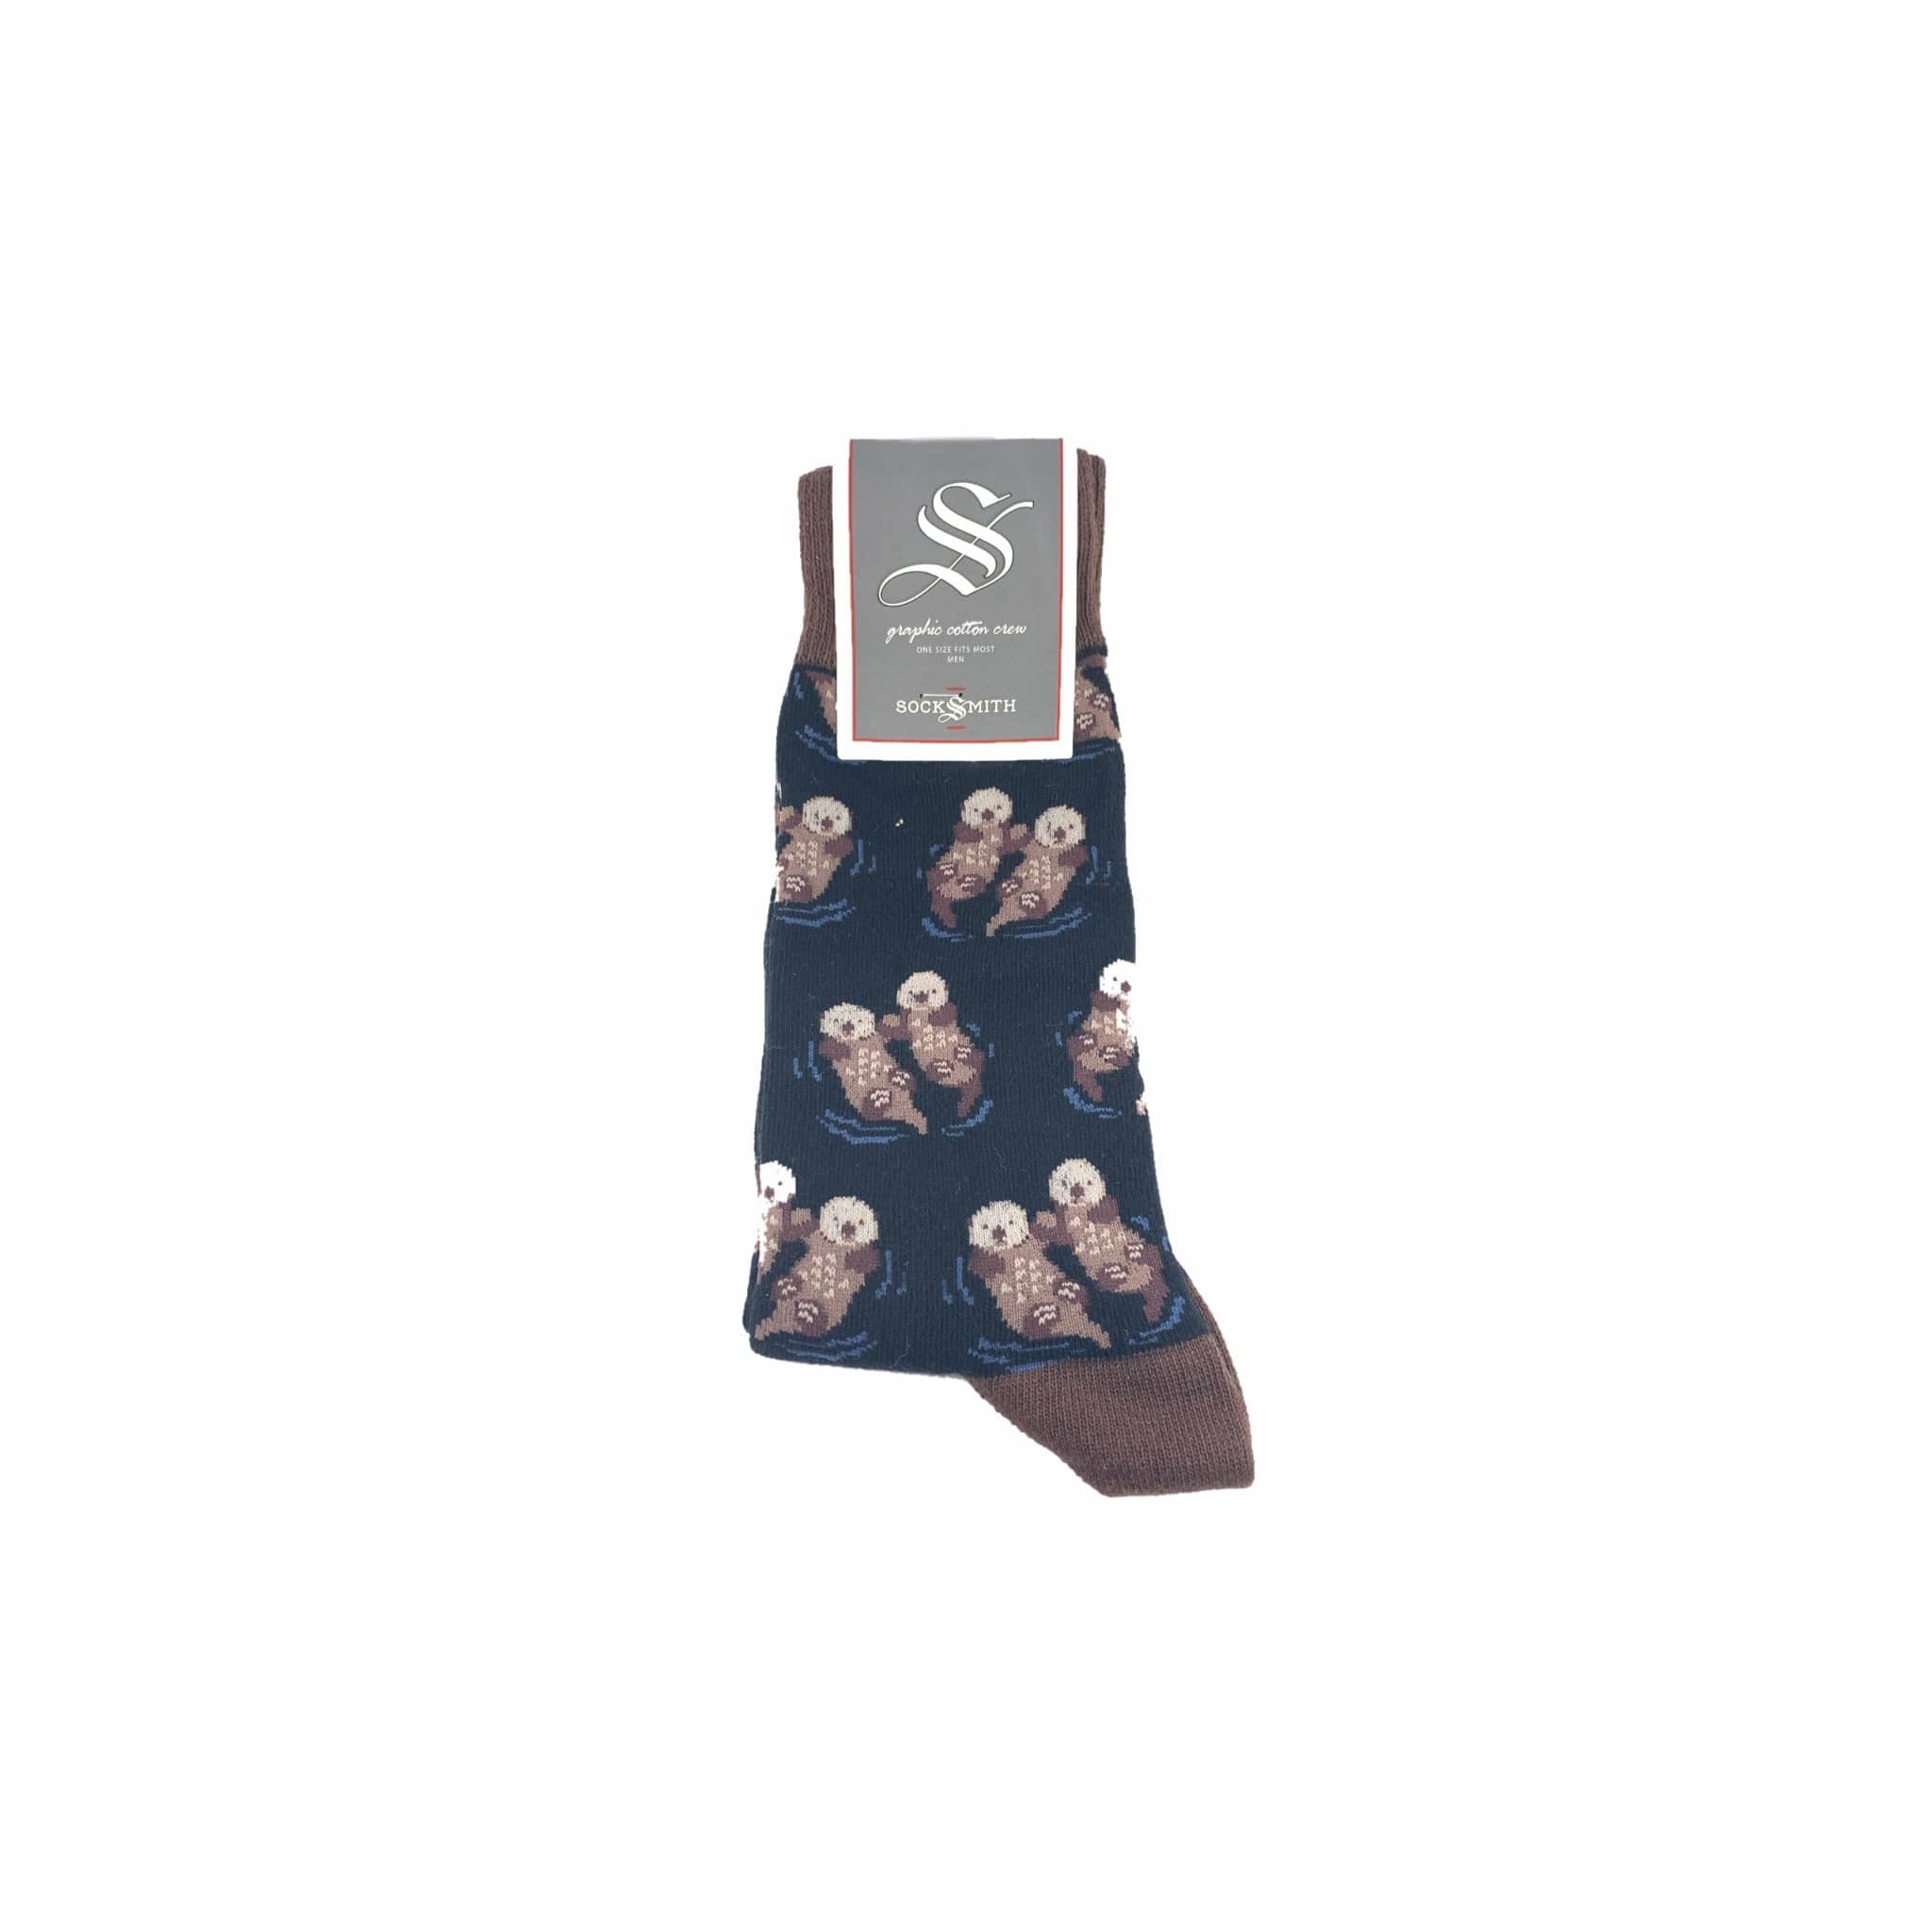 Rigg-socks Sea Otter With Donut For Men Comfortable Sport Socks Black